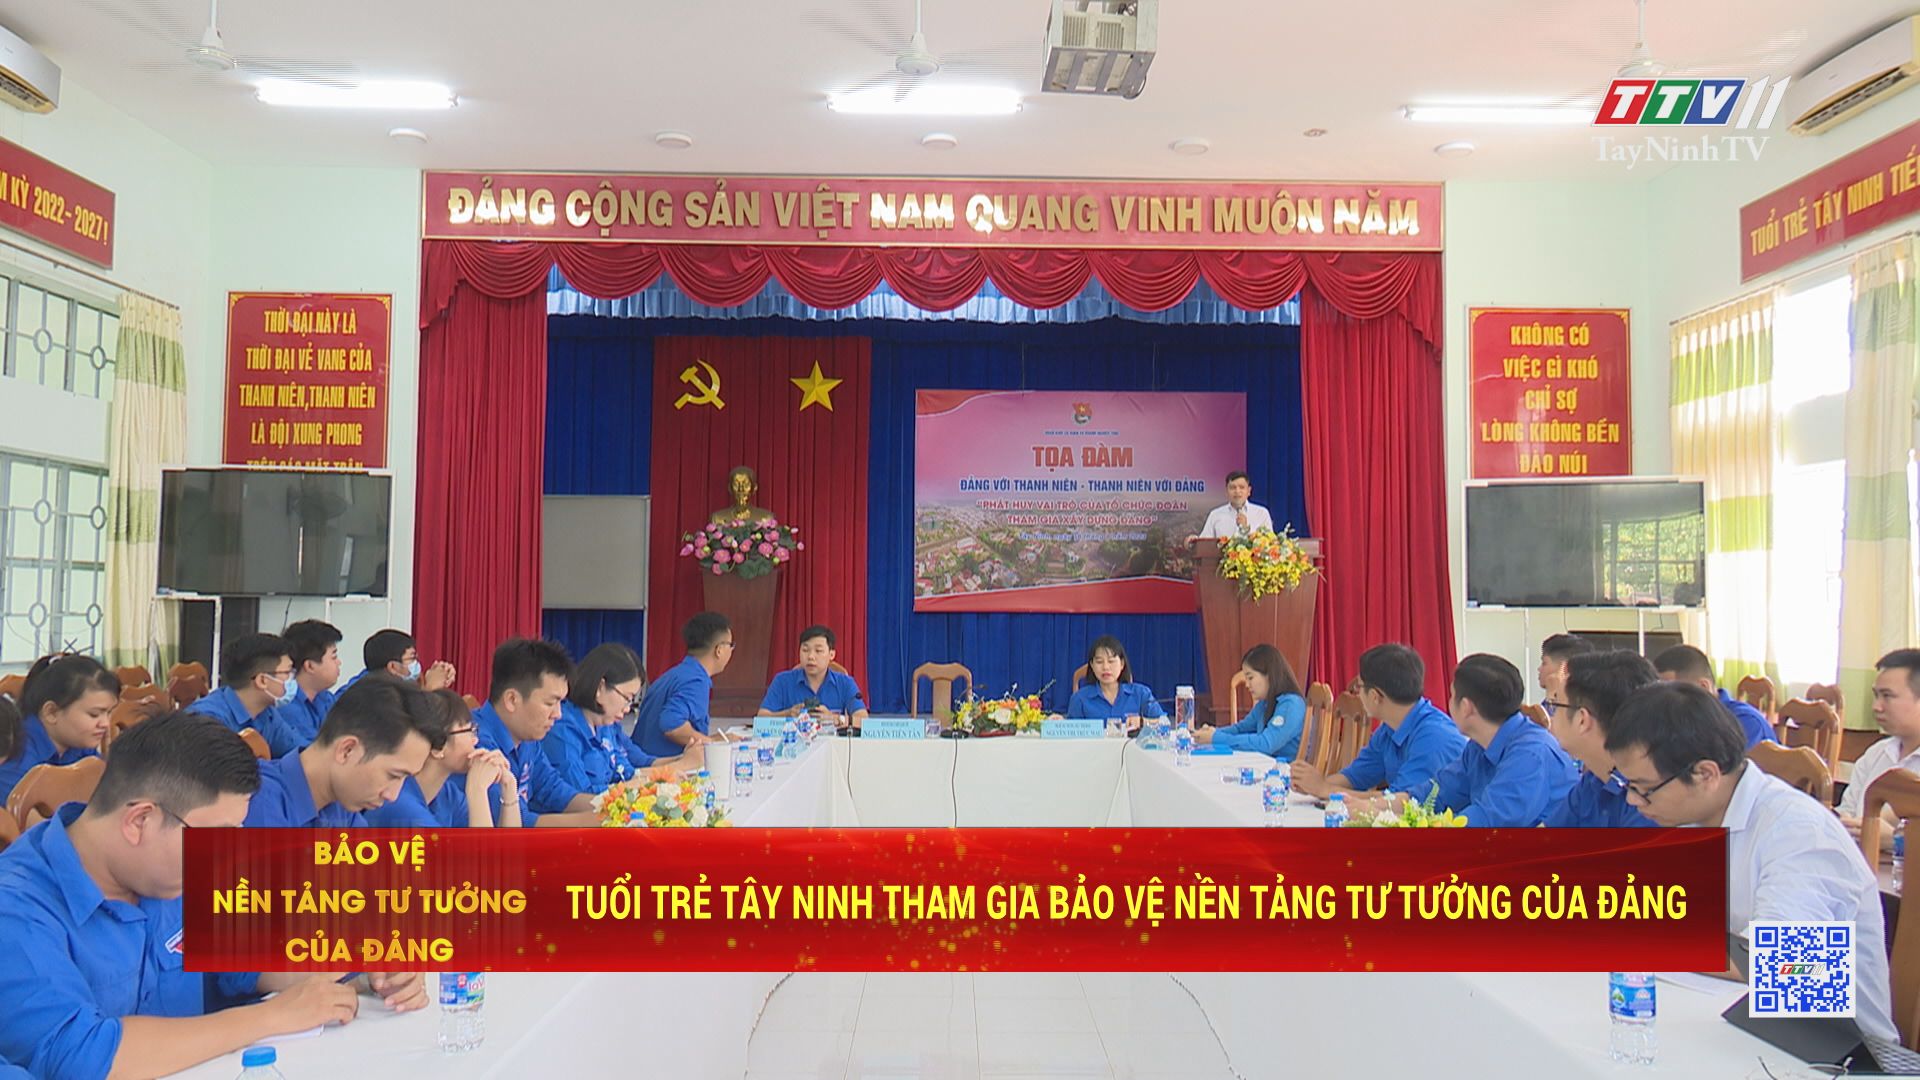 Tuổi trẻ Tây Ninh tham gia bảo vệ nền tảng tư tưởng của Đảng | TayNinhTV